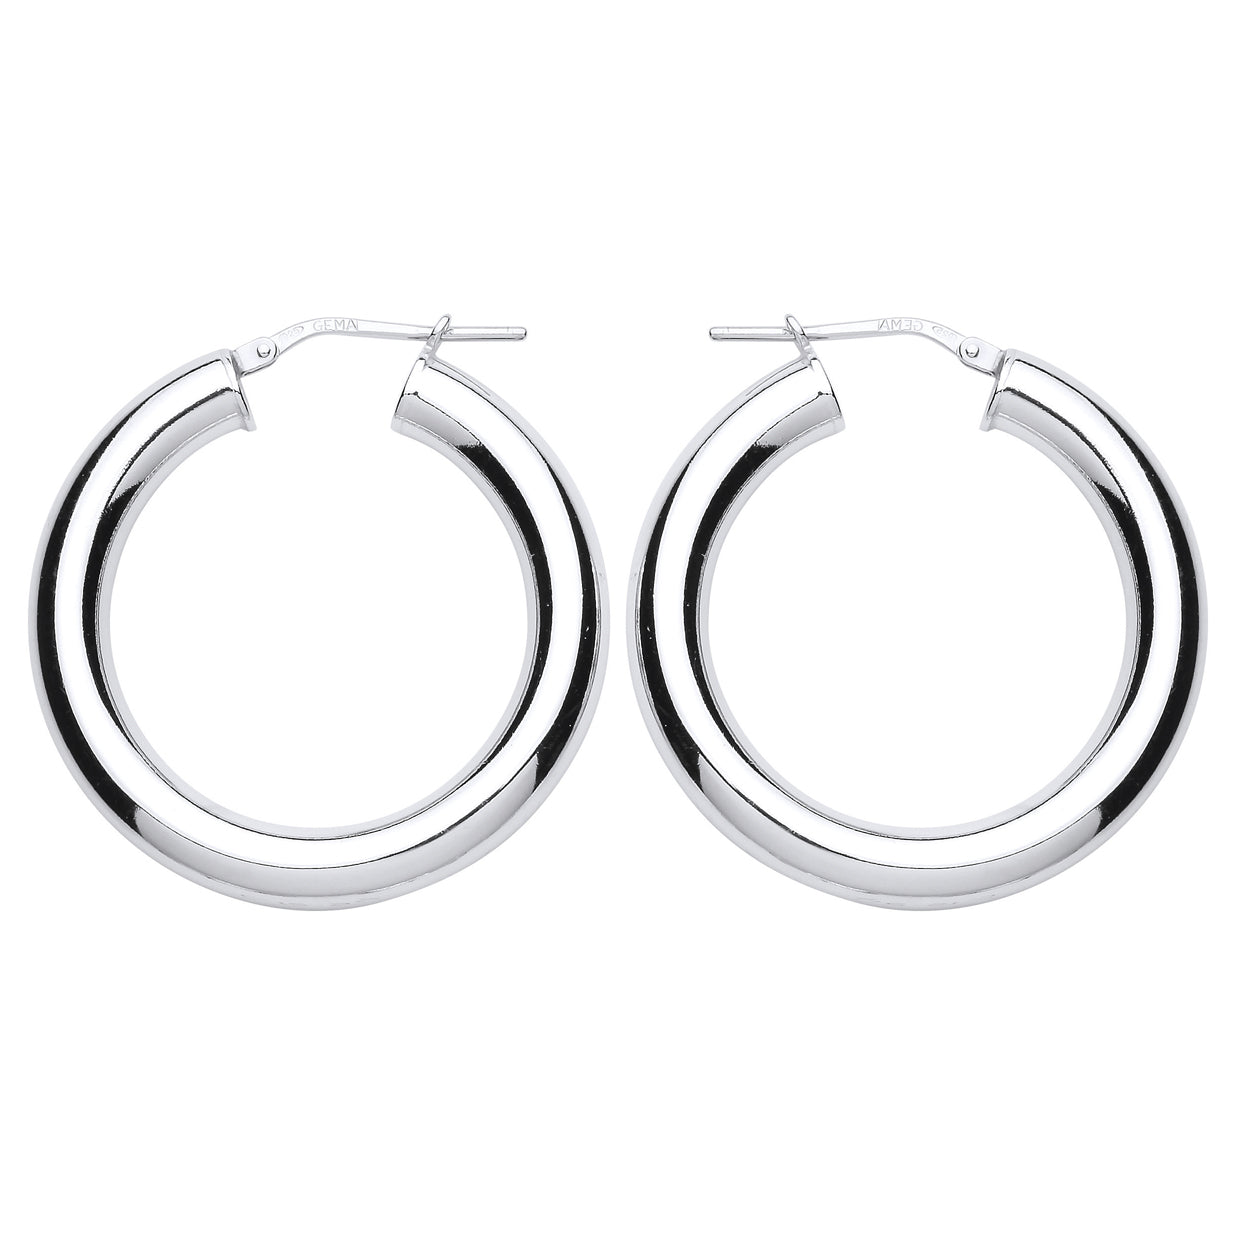 Silver  Polished Hoop Earrings 32mm - ER94